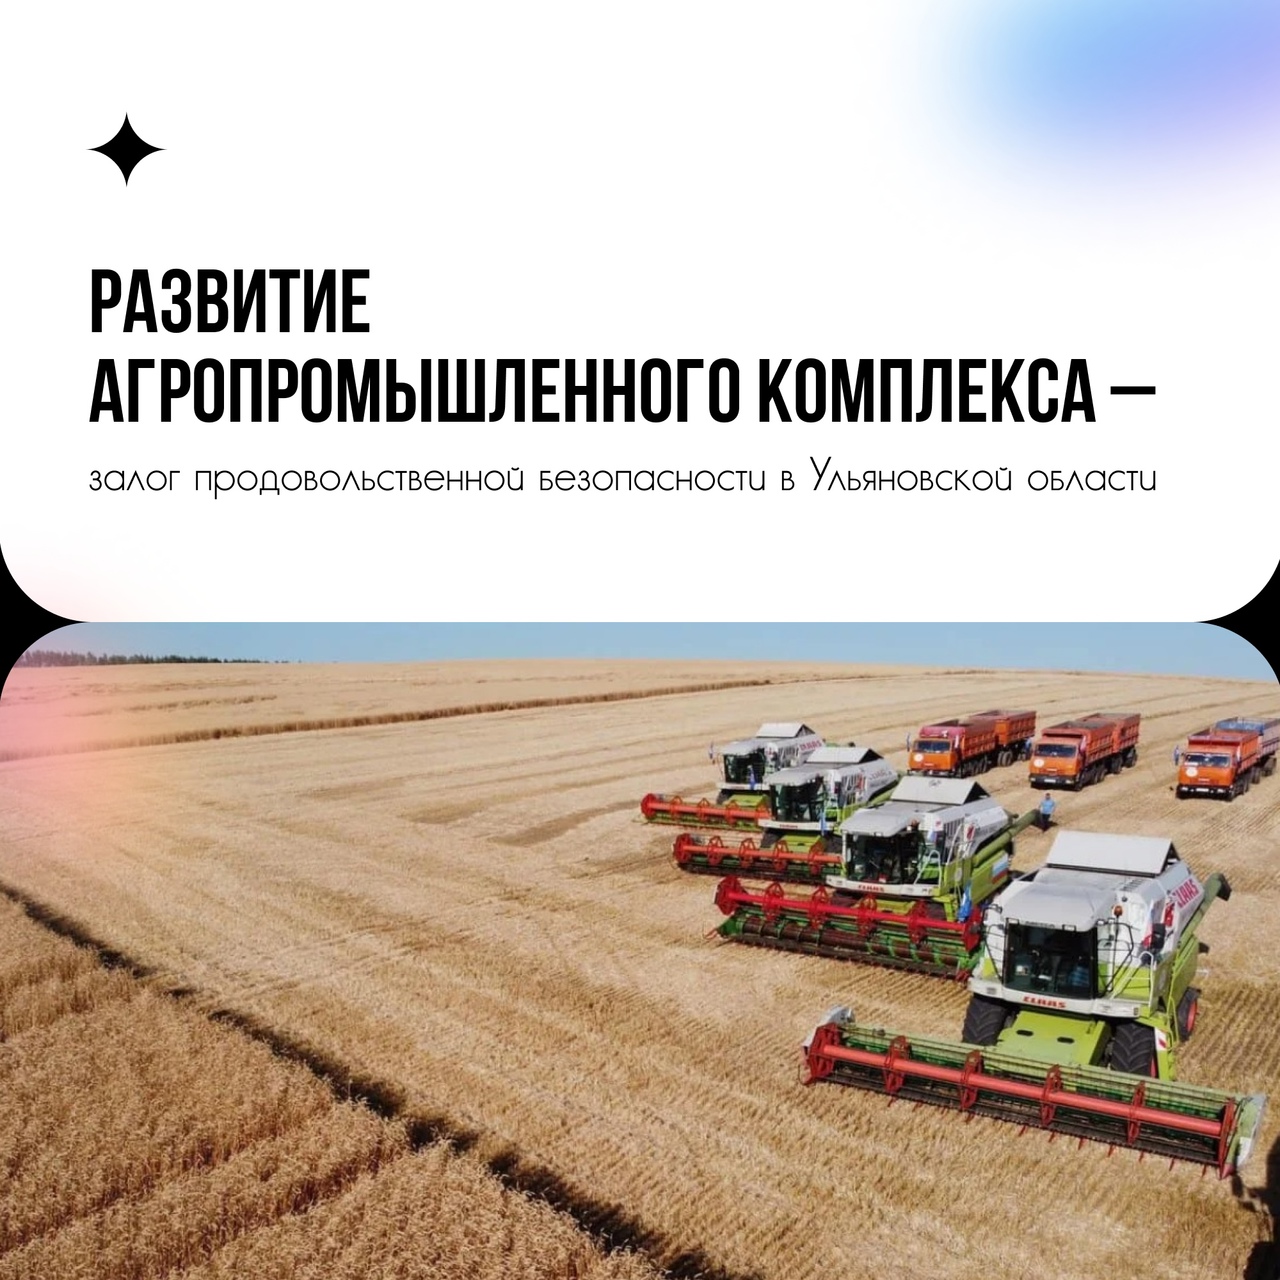 Каких результатов добилась Ульяновская область в агропромышленном комплексе?